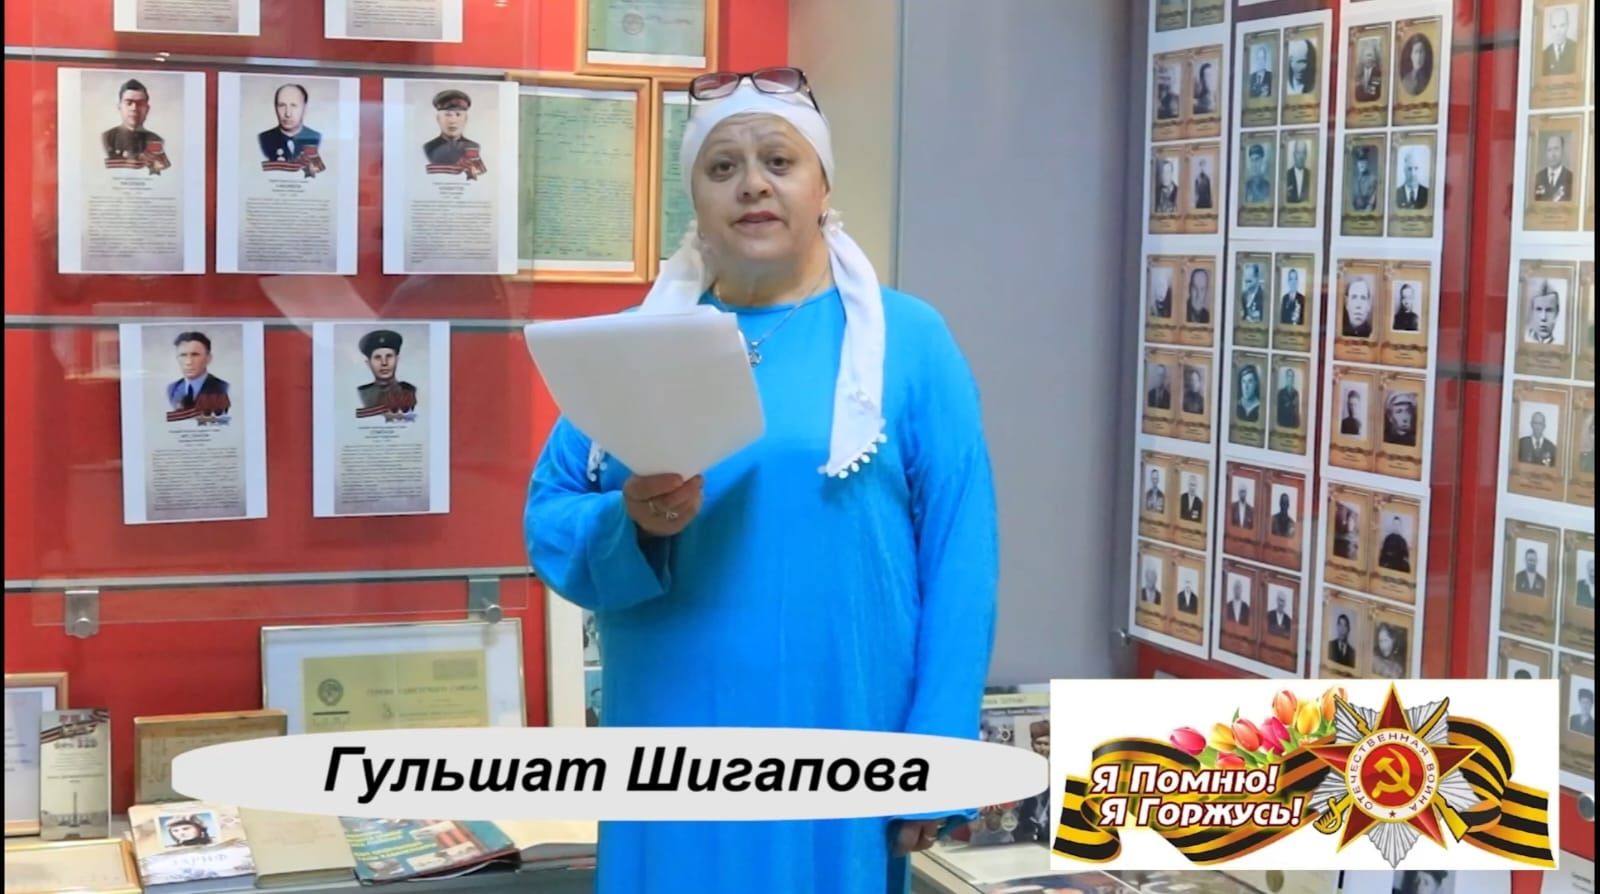 Дрожжановский краеведческий музей не только место для хранения экспонатов: читаем стихи о войне